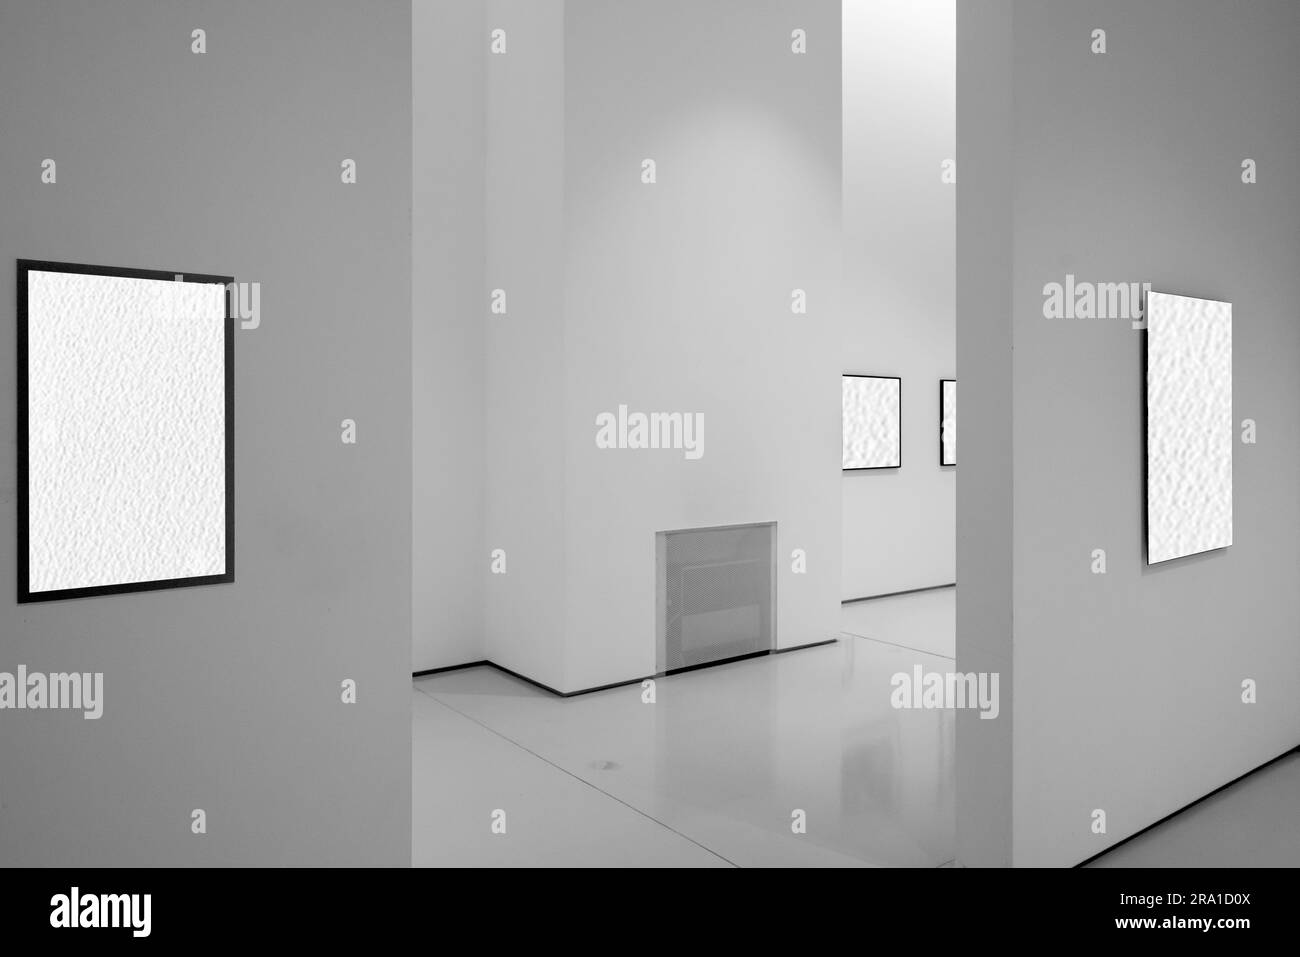 Im weiß umgebauten Ausstellungsraum sind Rahmen mit leerem Interieur ausgestellt. Das weiße Innere der Rahmen ermöglicht das Einfügen von Bildern oder Text. Stockfoto